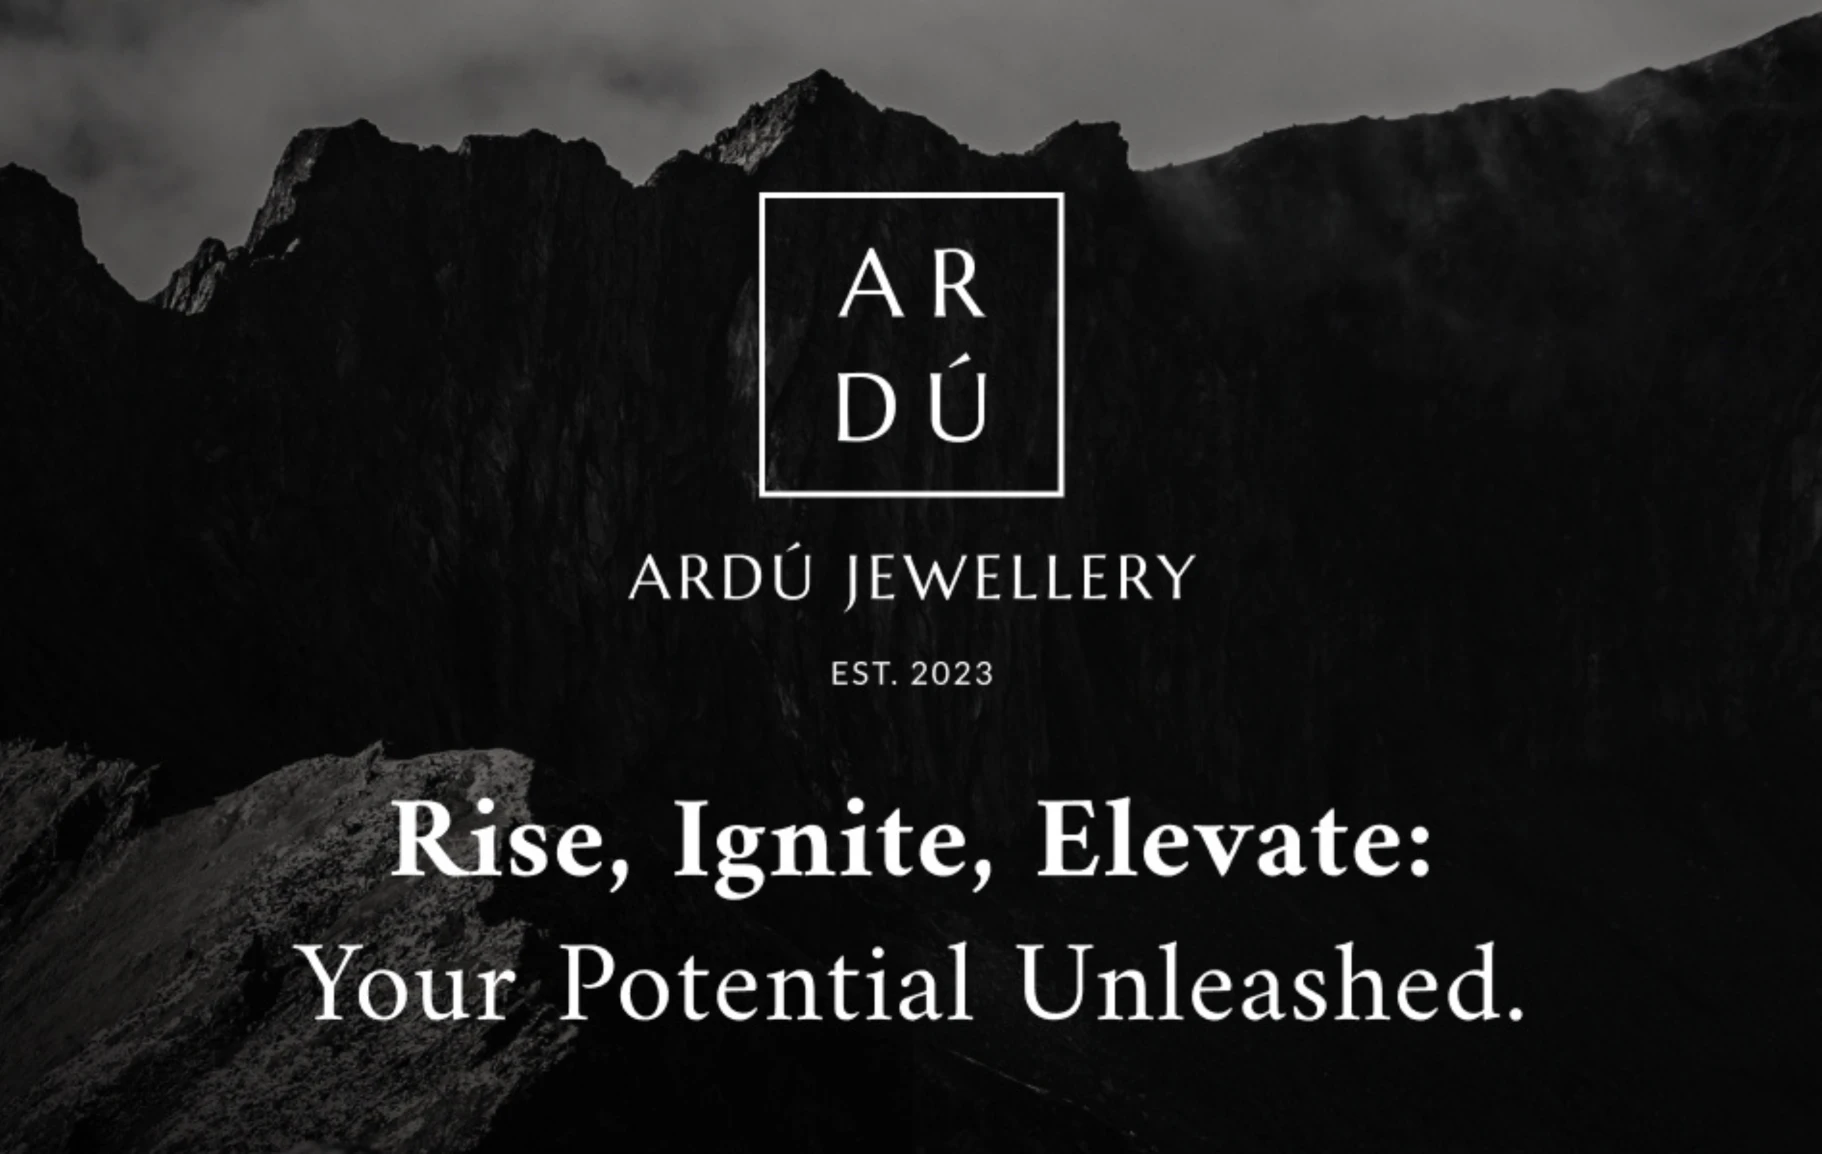 Ardu jewellery - Rise, Ignite, Elevate